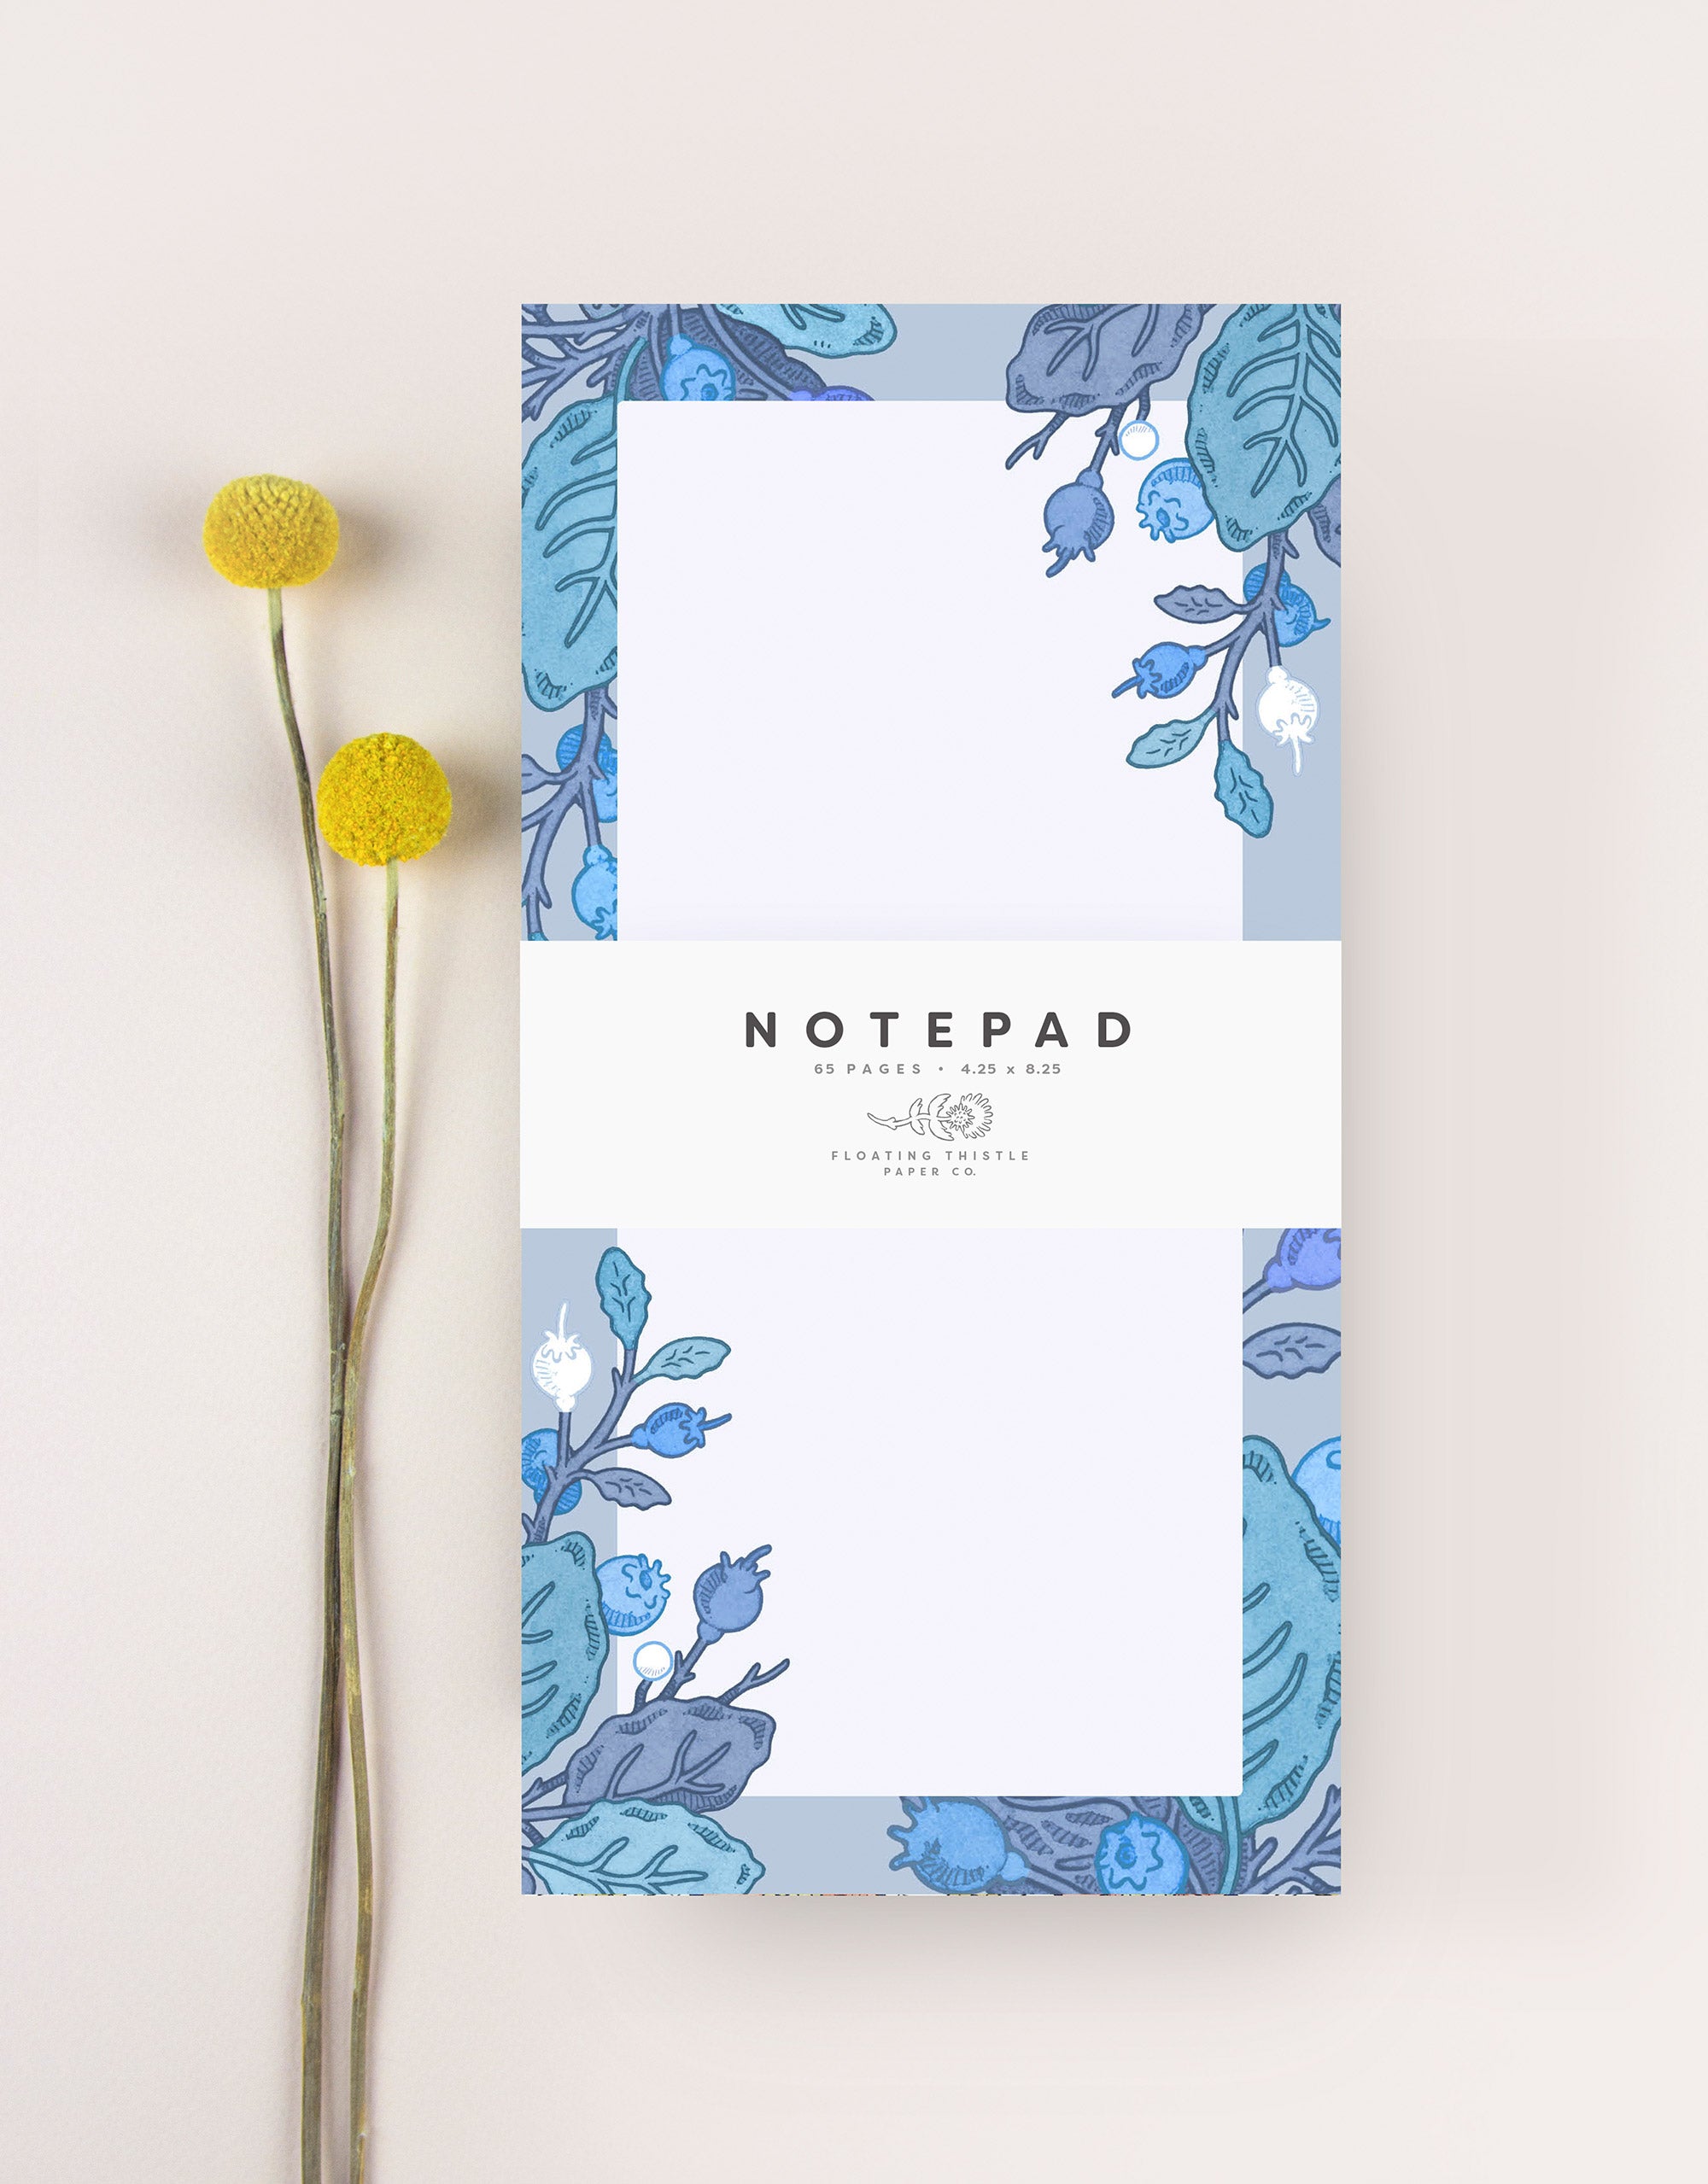 blueberry notepad with botanical illustration